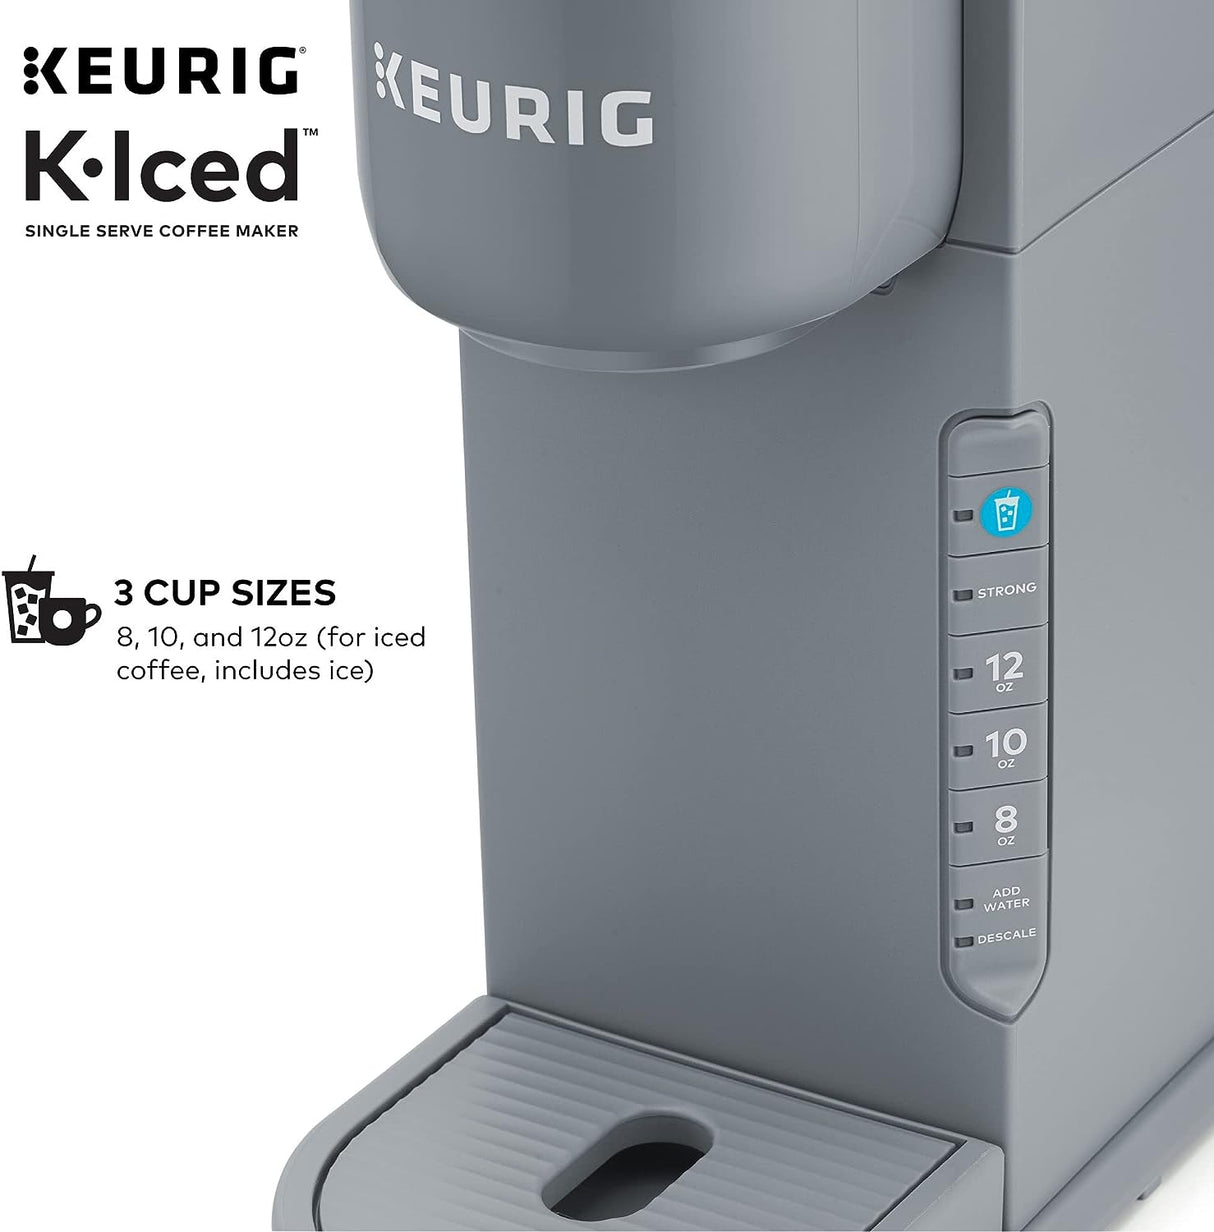 Keurig K-Iced Cafetera monodosis prepara frío y caliente (gris) 